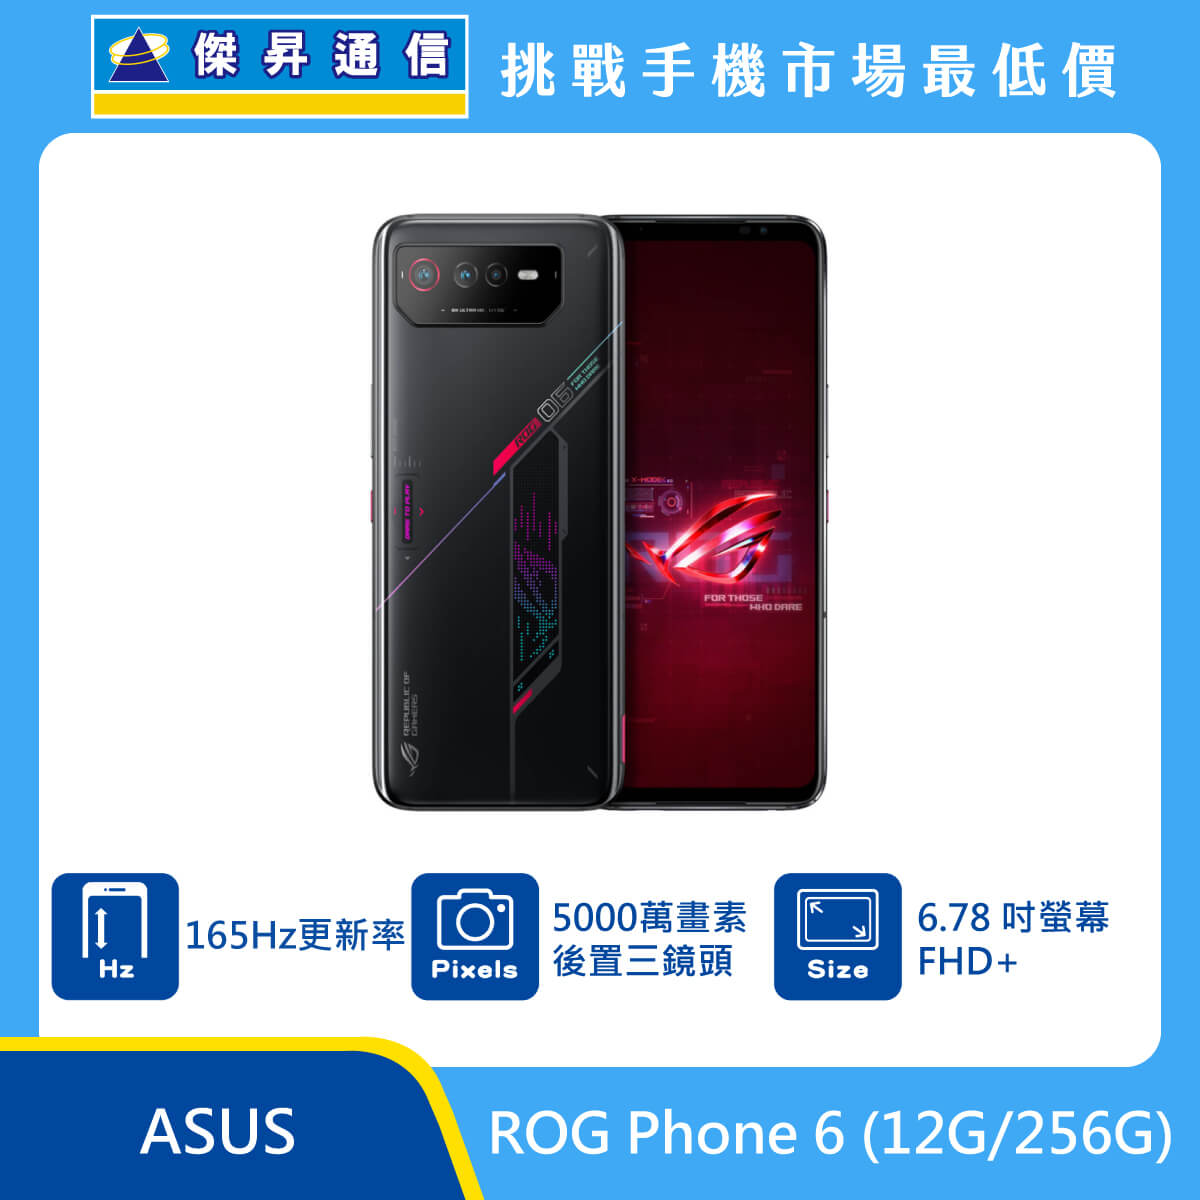 ASUS ROG Phone 6 (12G/256G)